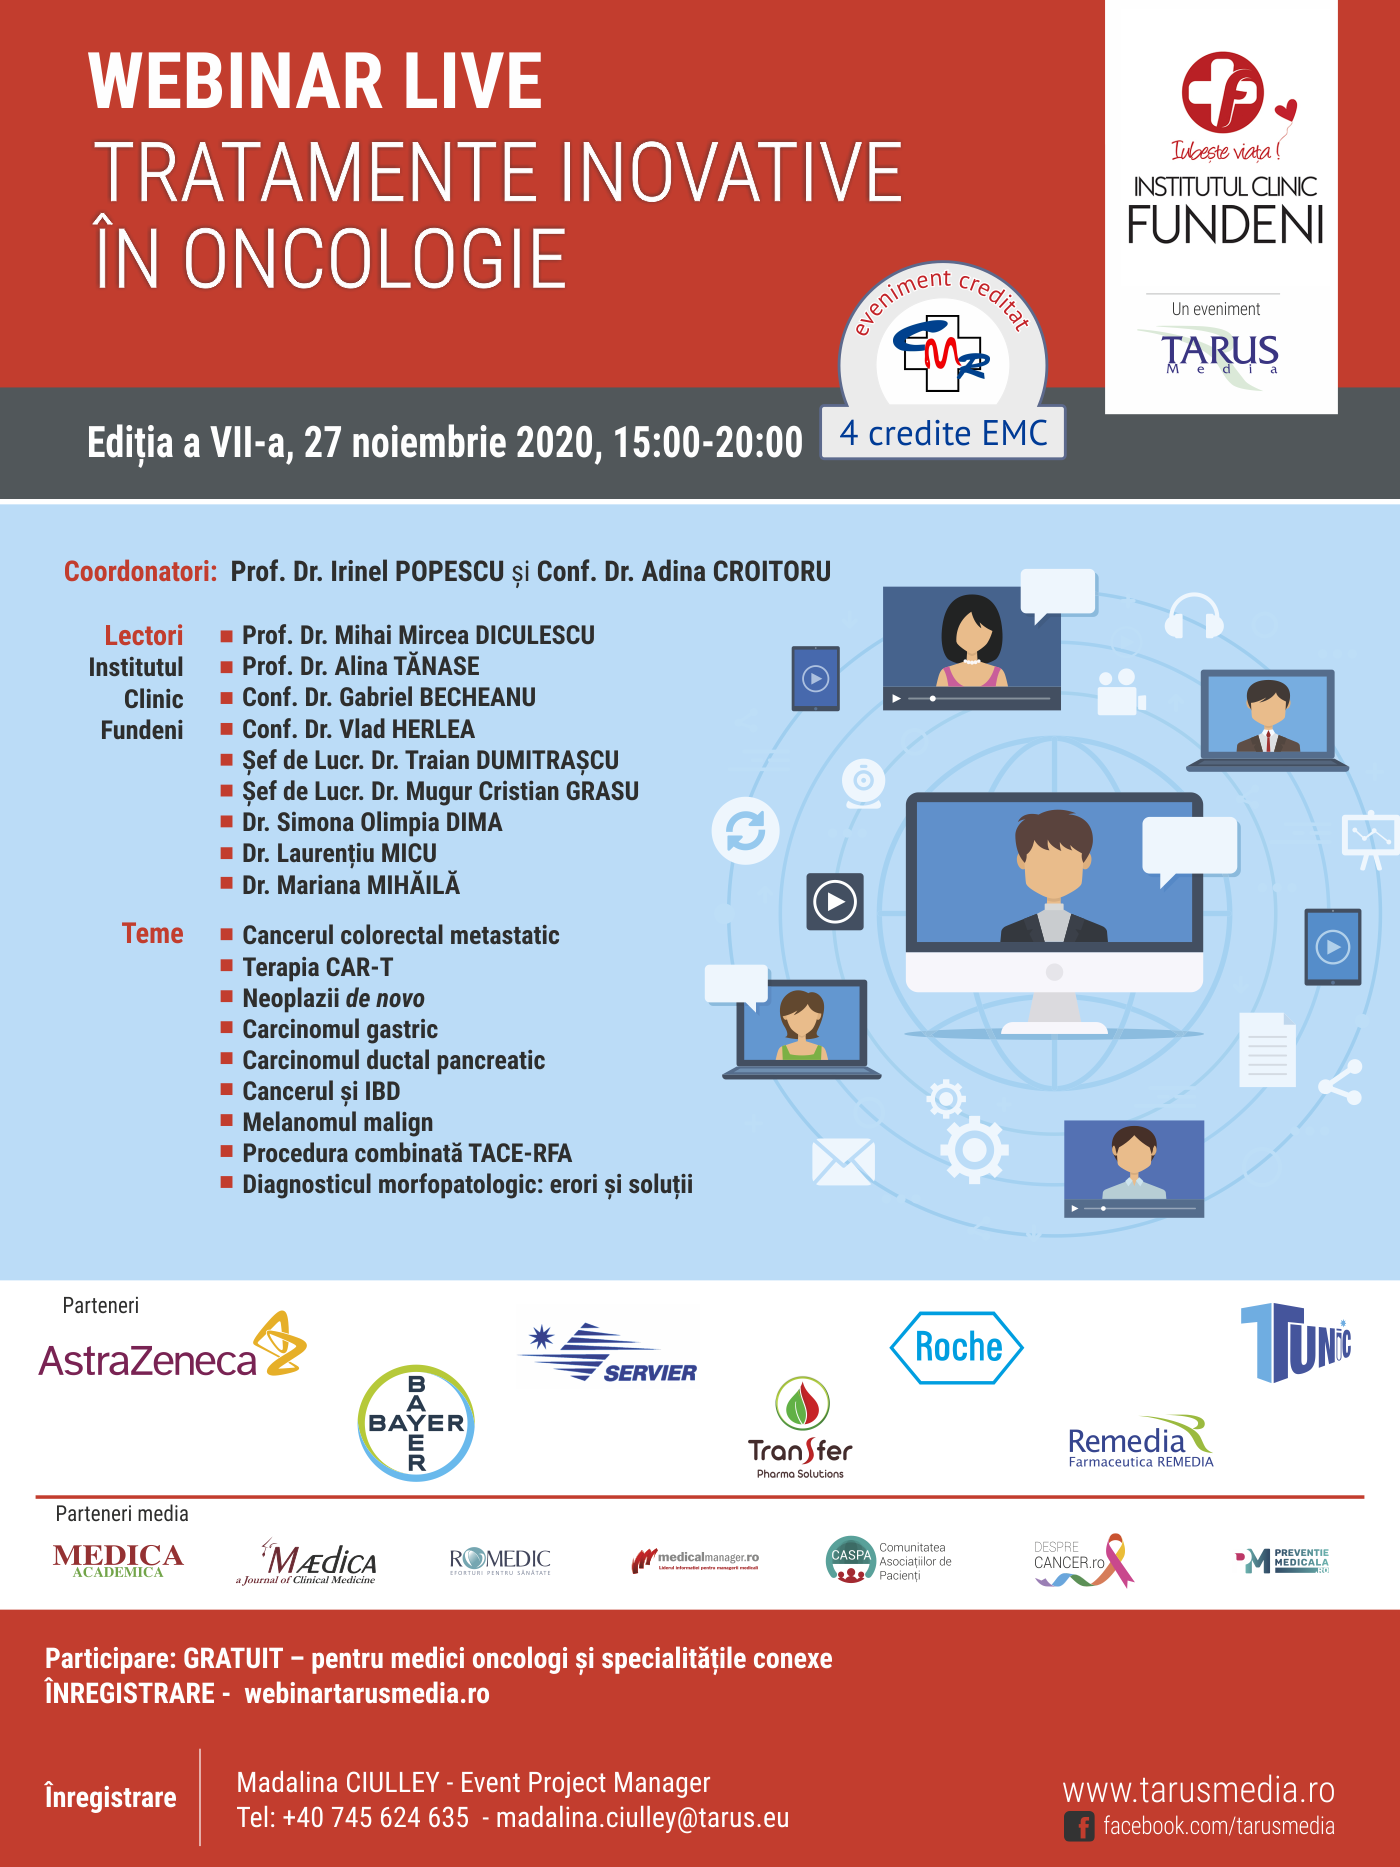 Webinar Live “Tratamente inovative în oncologie”: 27 noiembrie, orele 15.00-17.00